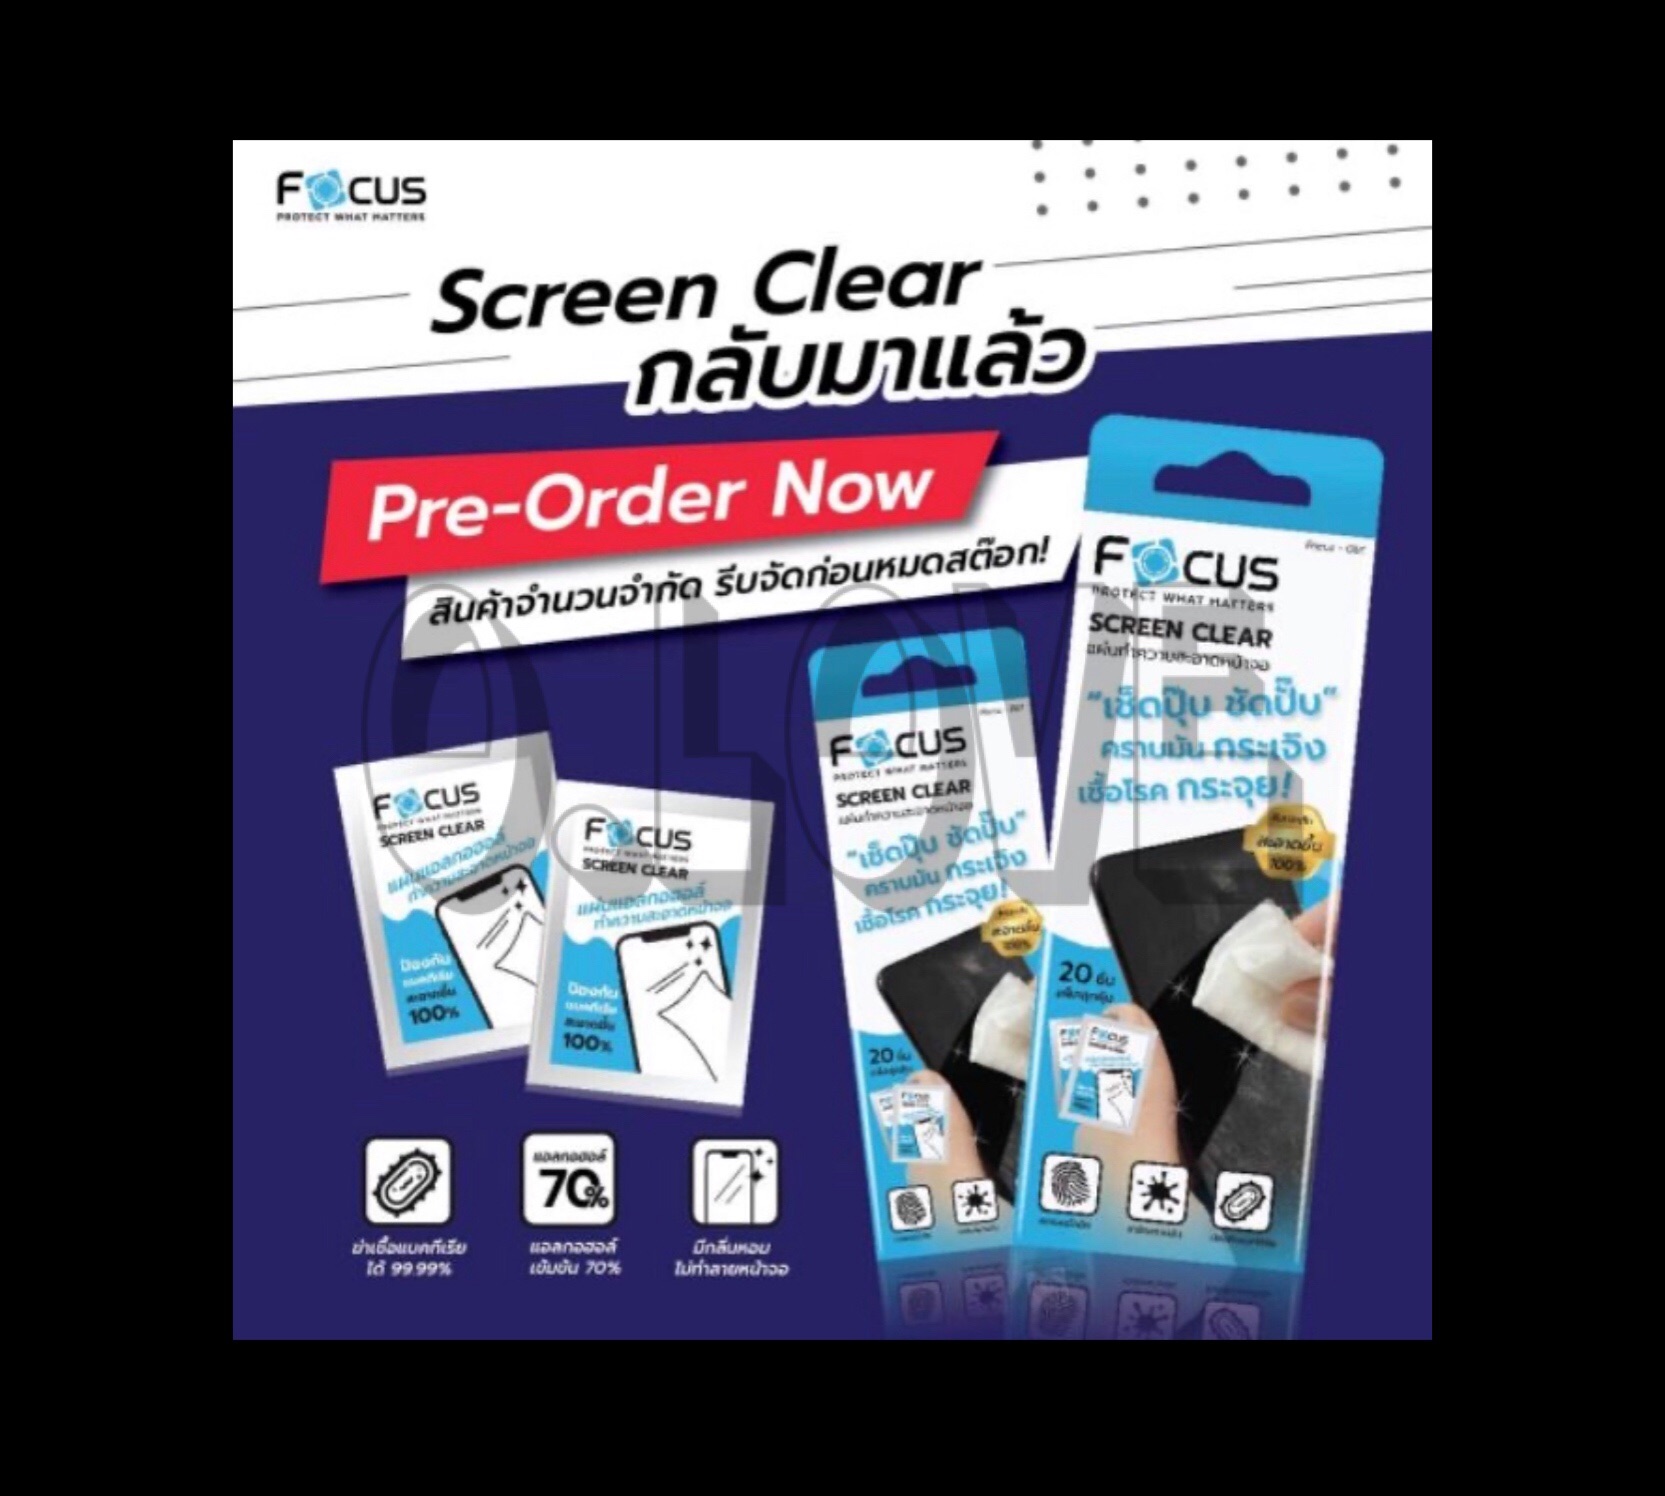 พร้อมส่งค่ะ 🚚 สินค้าแบ่งขาย 4ซอง Focus Screen Clear แผ่นแอลกอฮอล์ ทำความสะอาดหน้าจอ โทรศัพท์ มือถือ โฟกัส แบรนด์ยอดนิยม clear wipe มี Alcohol 70%  ช่ป้องกันเชื้อโรคได้ ทำความสะอาดหน้าจอสมาร์ทโฟนและแท็บเลท คราบมันกระเจิง ไม่ทำร้ายหน้าจอโทรศัพท์